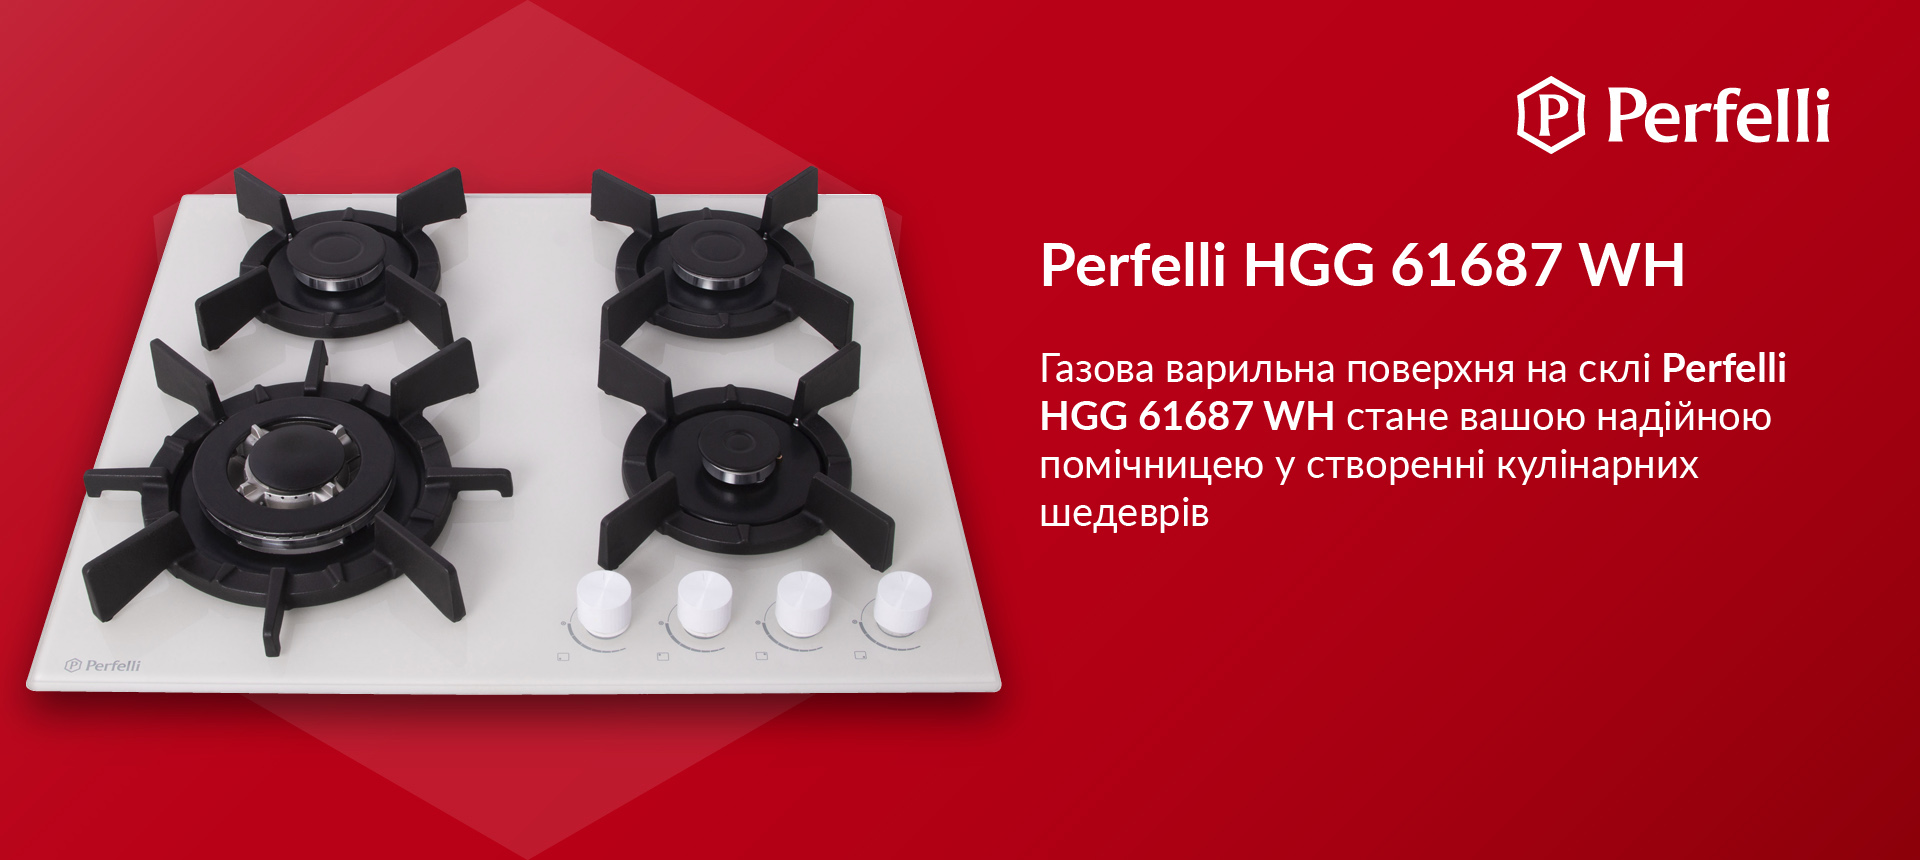 Газова варильна поверхня на склі Perfelli HGG 61687 WH стане вашою надійною помічницею у створенні кулінарних шедеврів